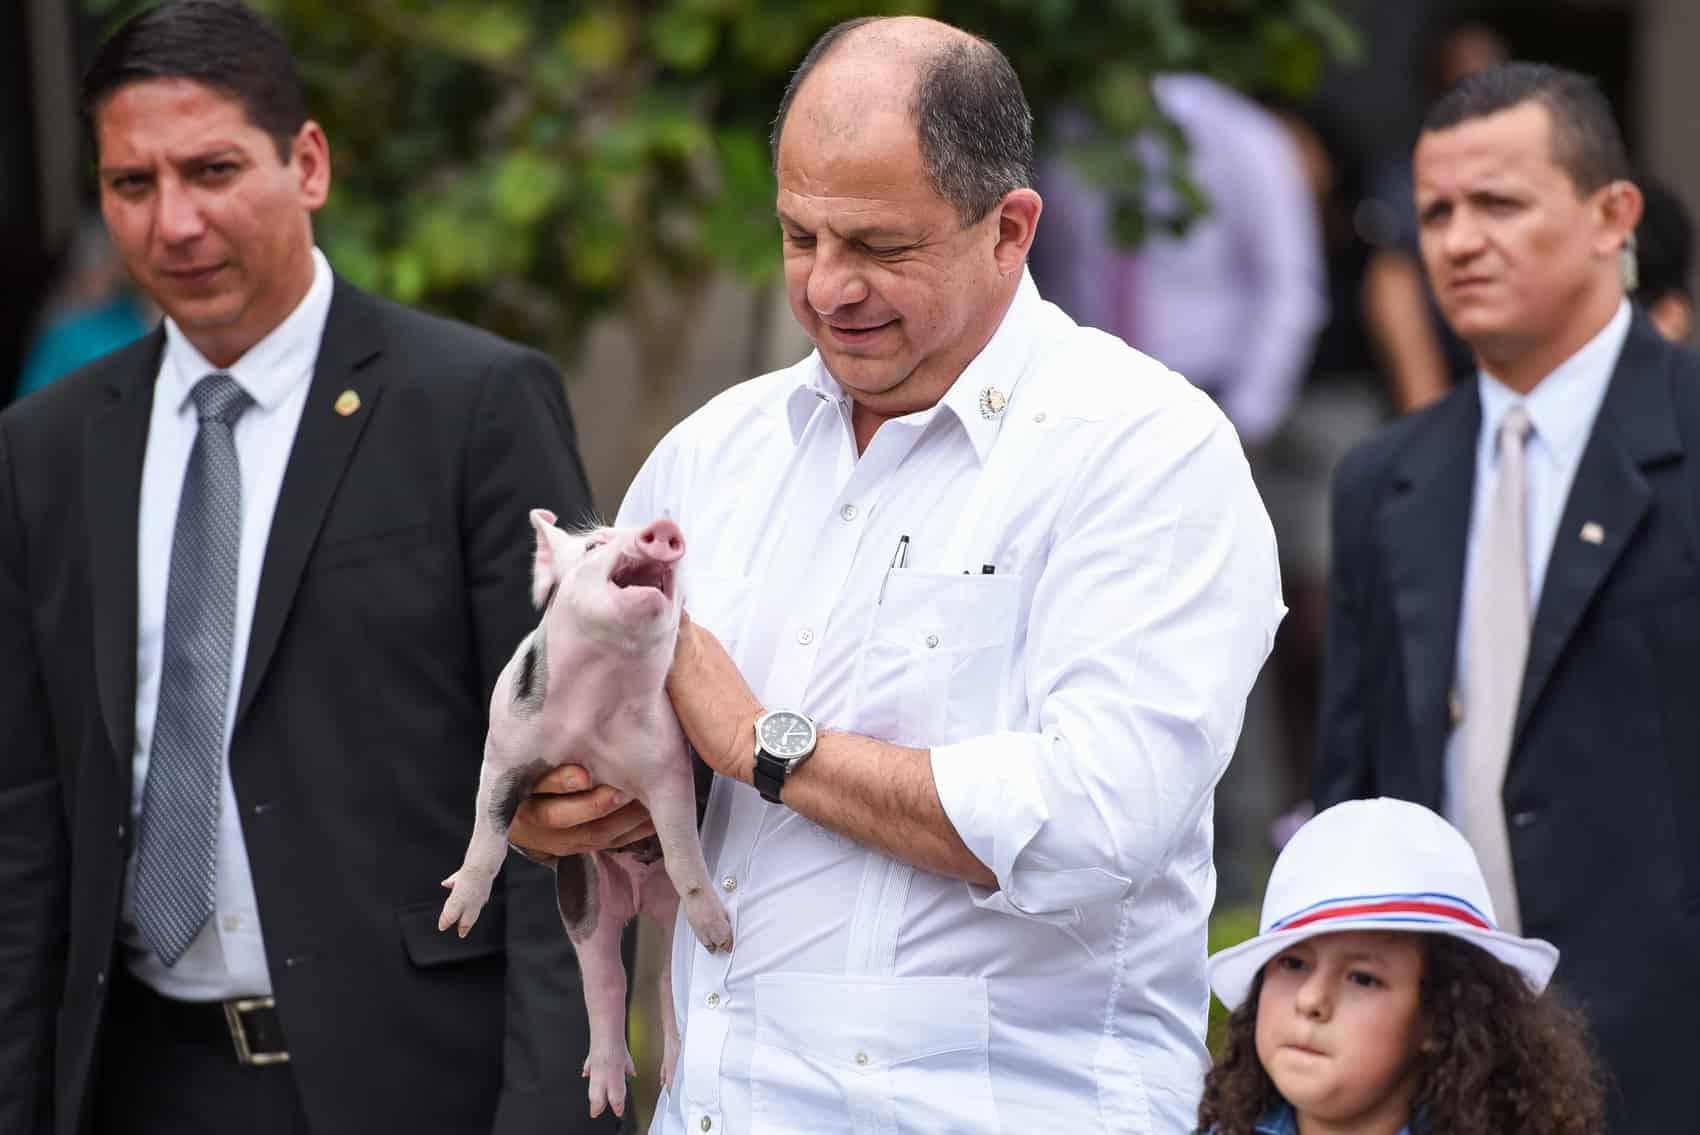 Daniela, the president's new pet pig.